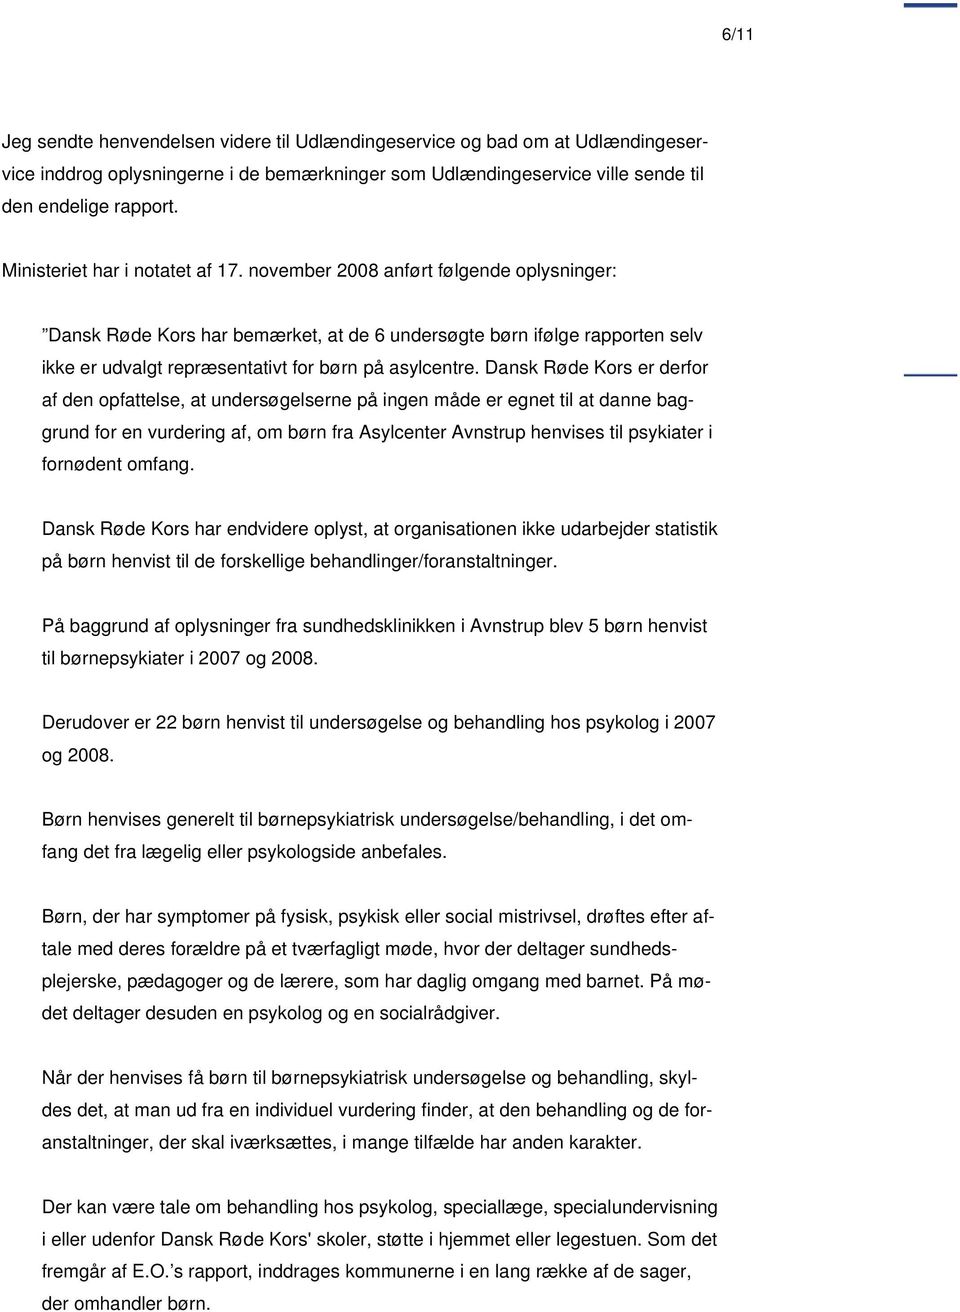 november 2008 anført følgende oplysninger: Dansk Røde Kors har bemærket, at de 6 undersøgte børn ifølge rapporten selv ikke er udvalgt repræsentativt for børn på asylcentre.